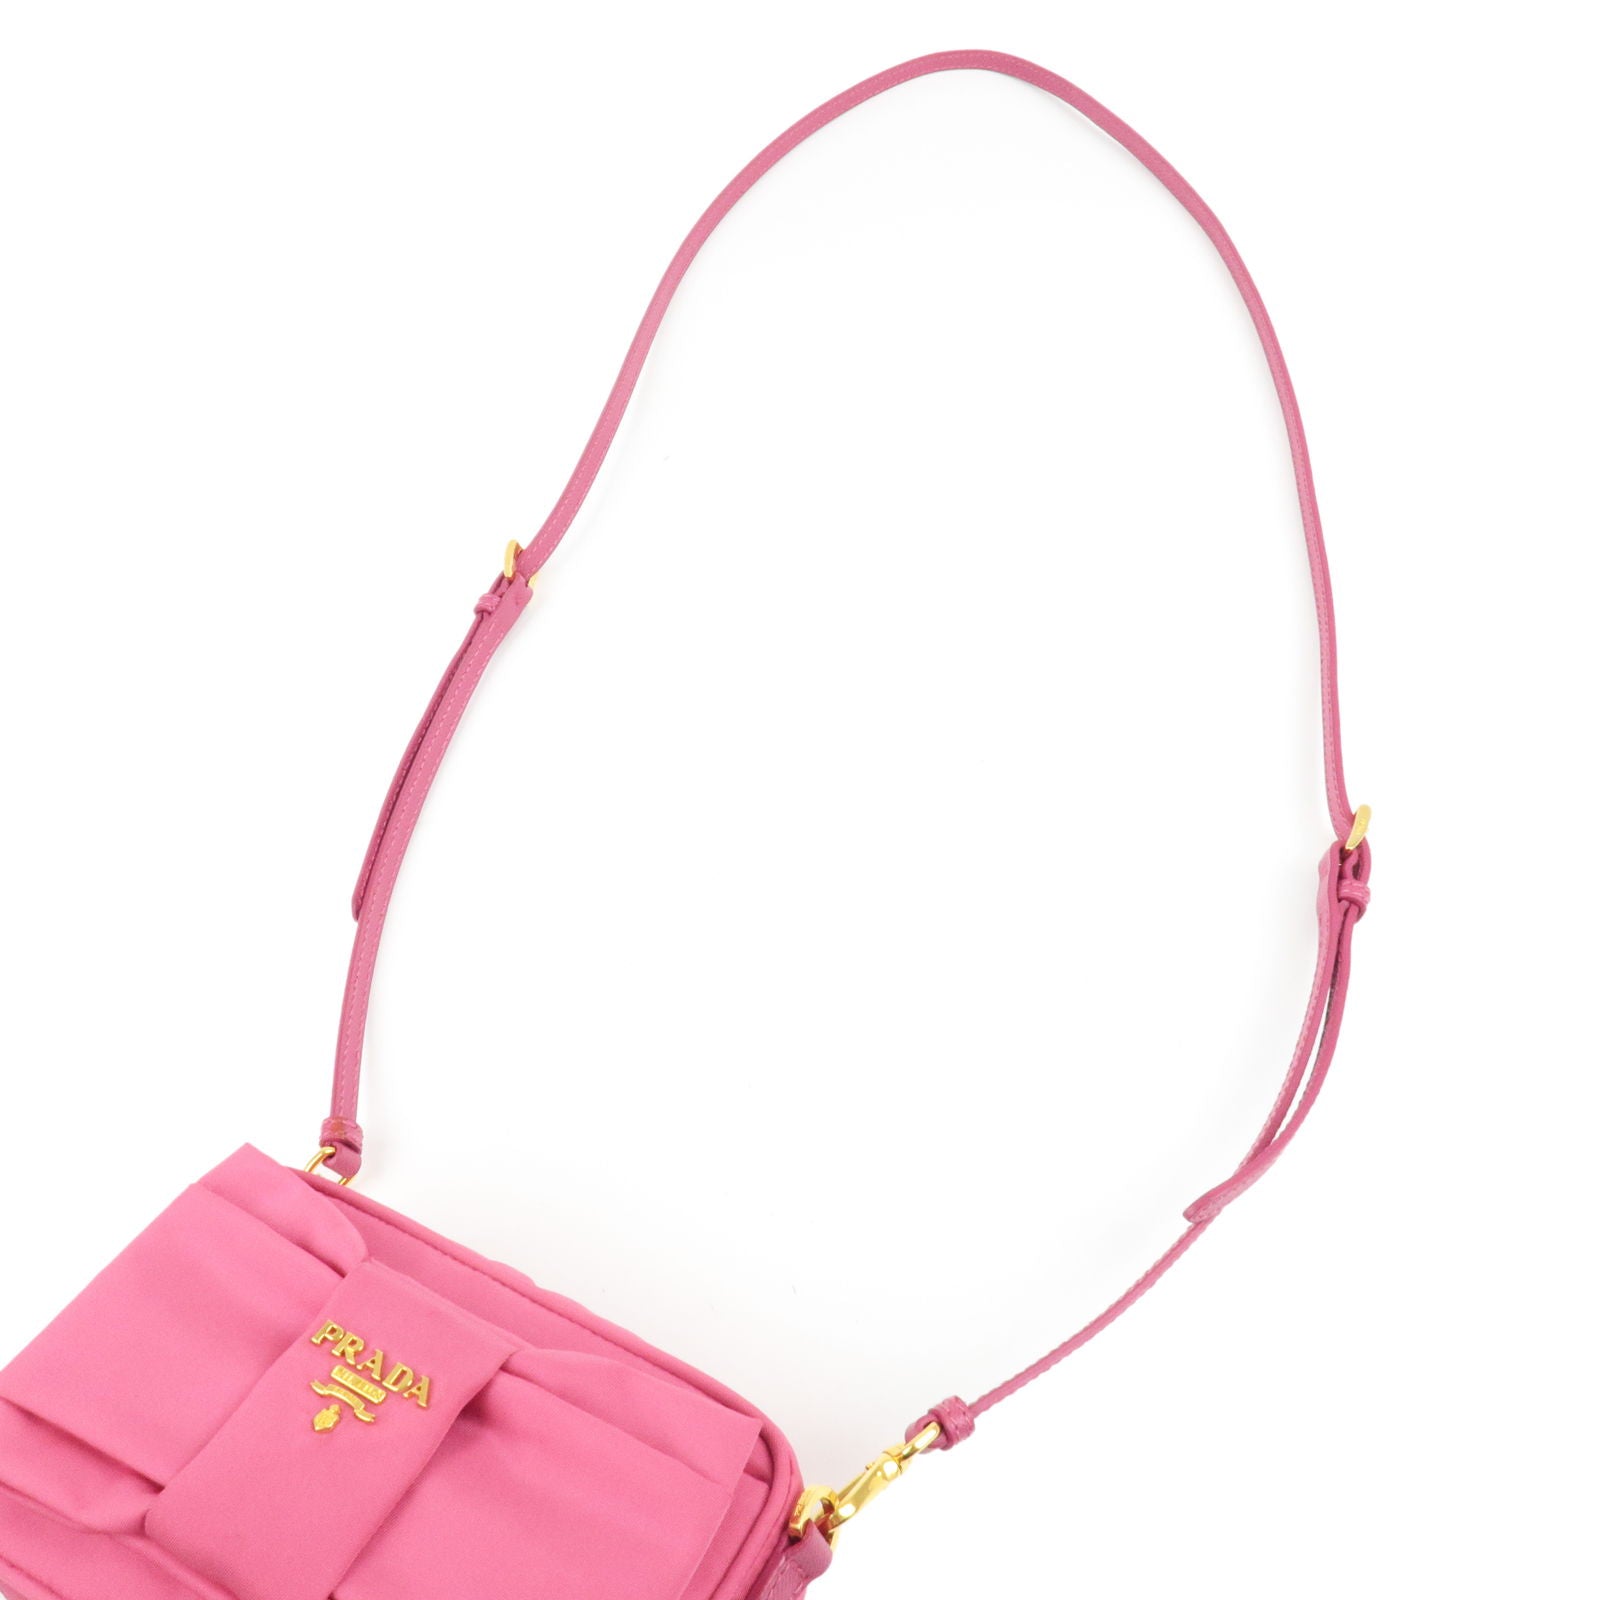 Prada Pochette Shoulder Bag Tessuto Small Pink 2158711